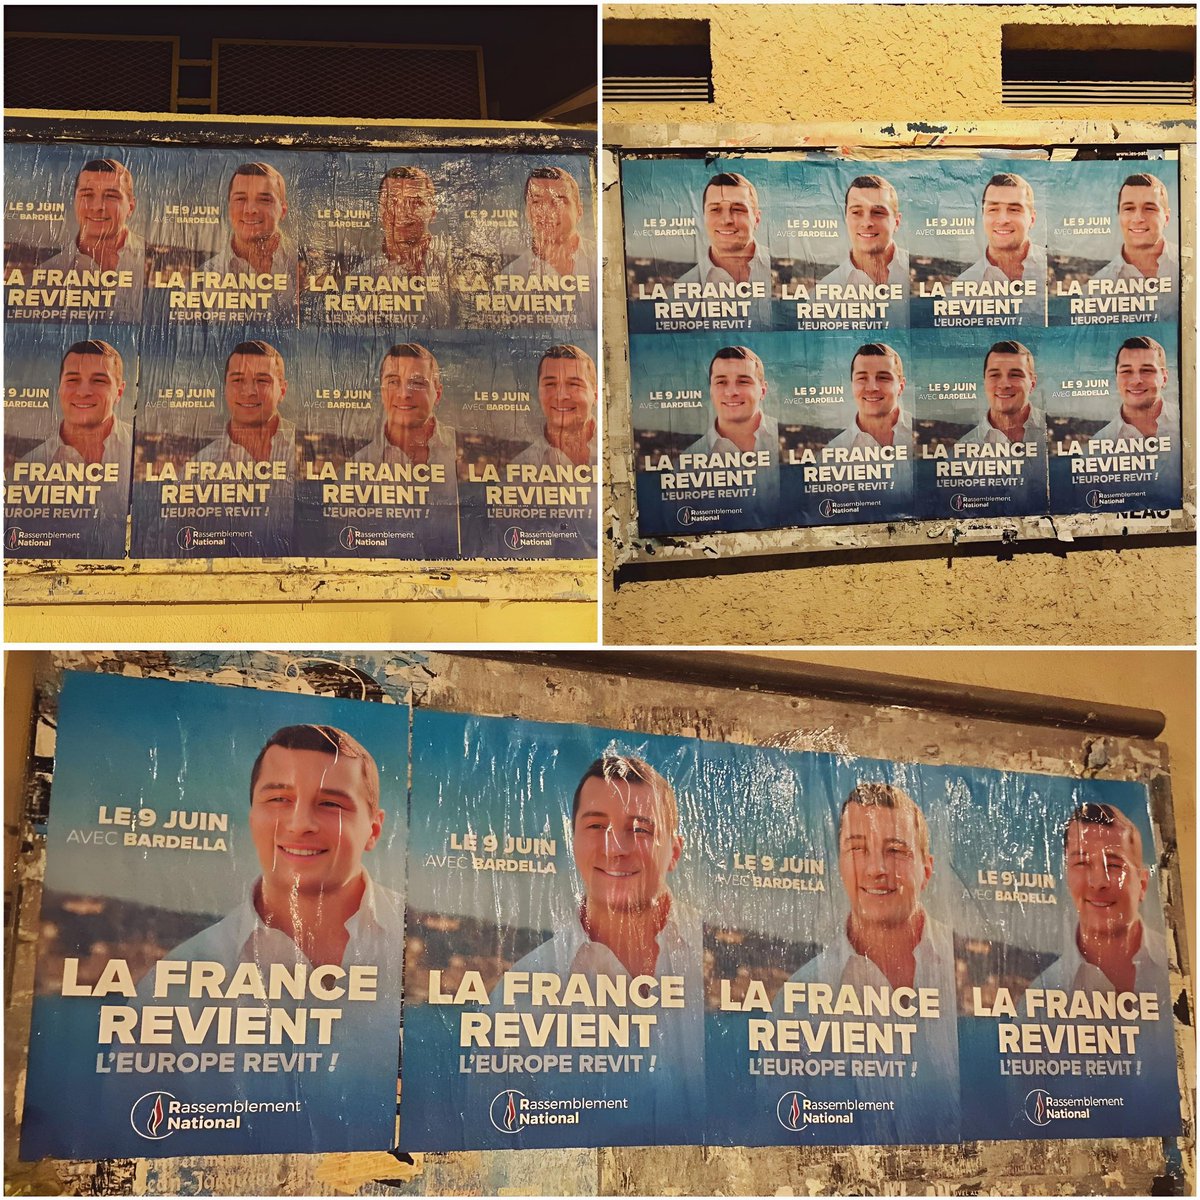 🇨🇵 Si le peuple vote, le peuple gagne !

Alors, dans la 1e circonscription de l'Hérault, ça colle sans relâche pour faire gagner le J et pour faire gagner la France 💪🔥

#VivementLe9Juin #AvecBardella